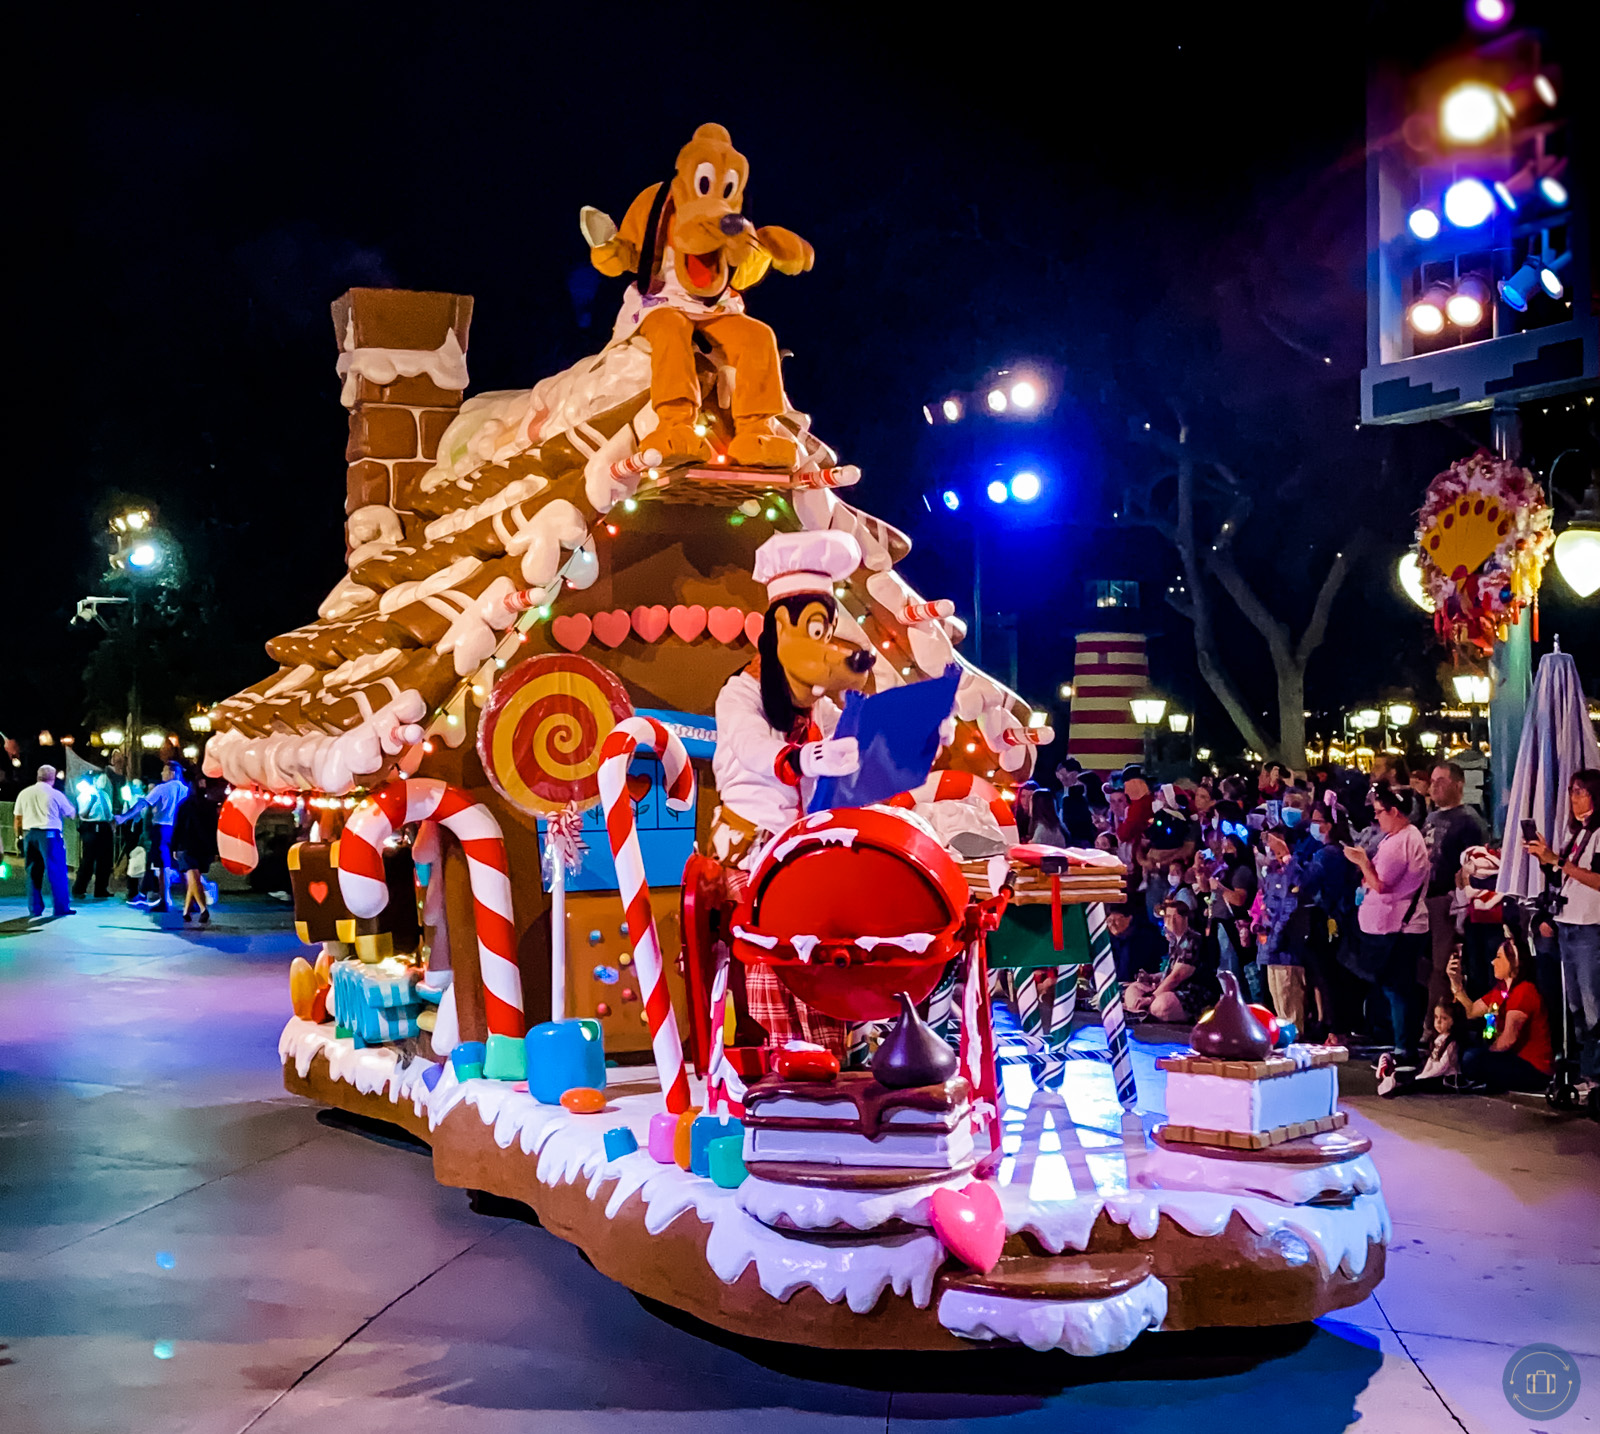 goofy and pluto parade float disneyland christmas fantasy parade